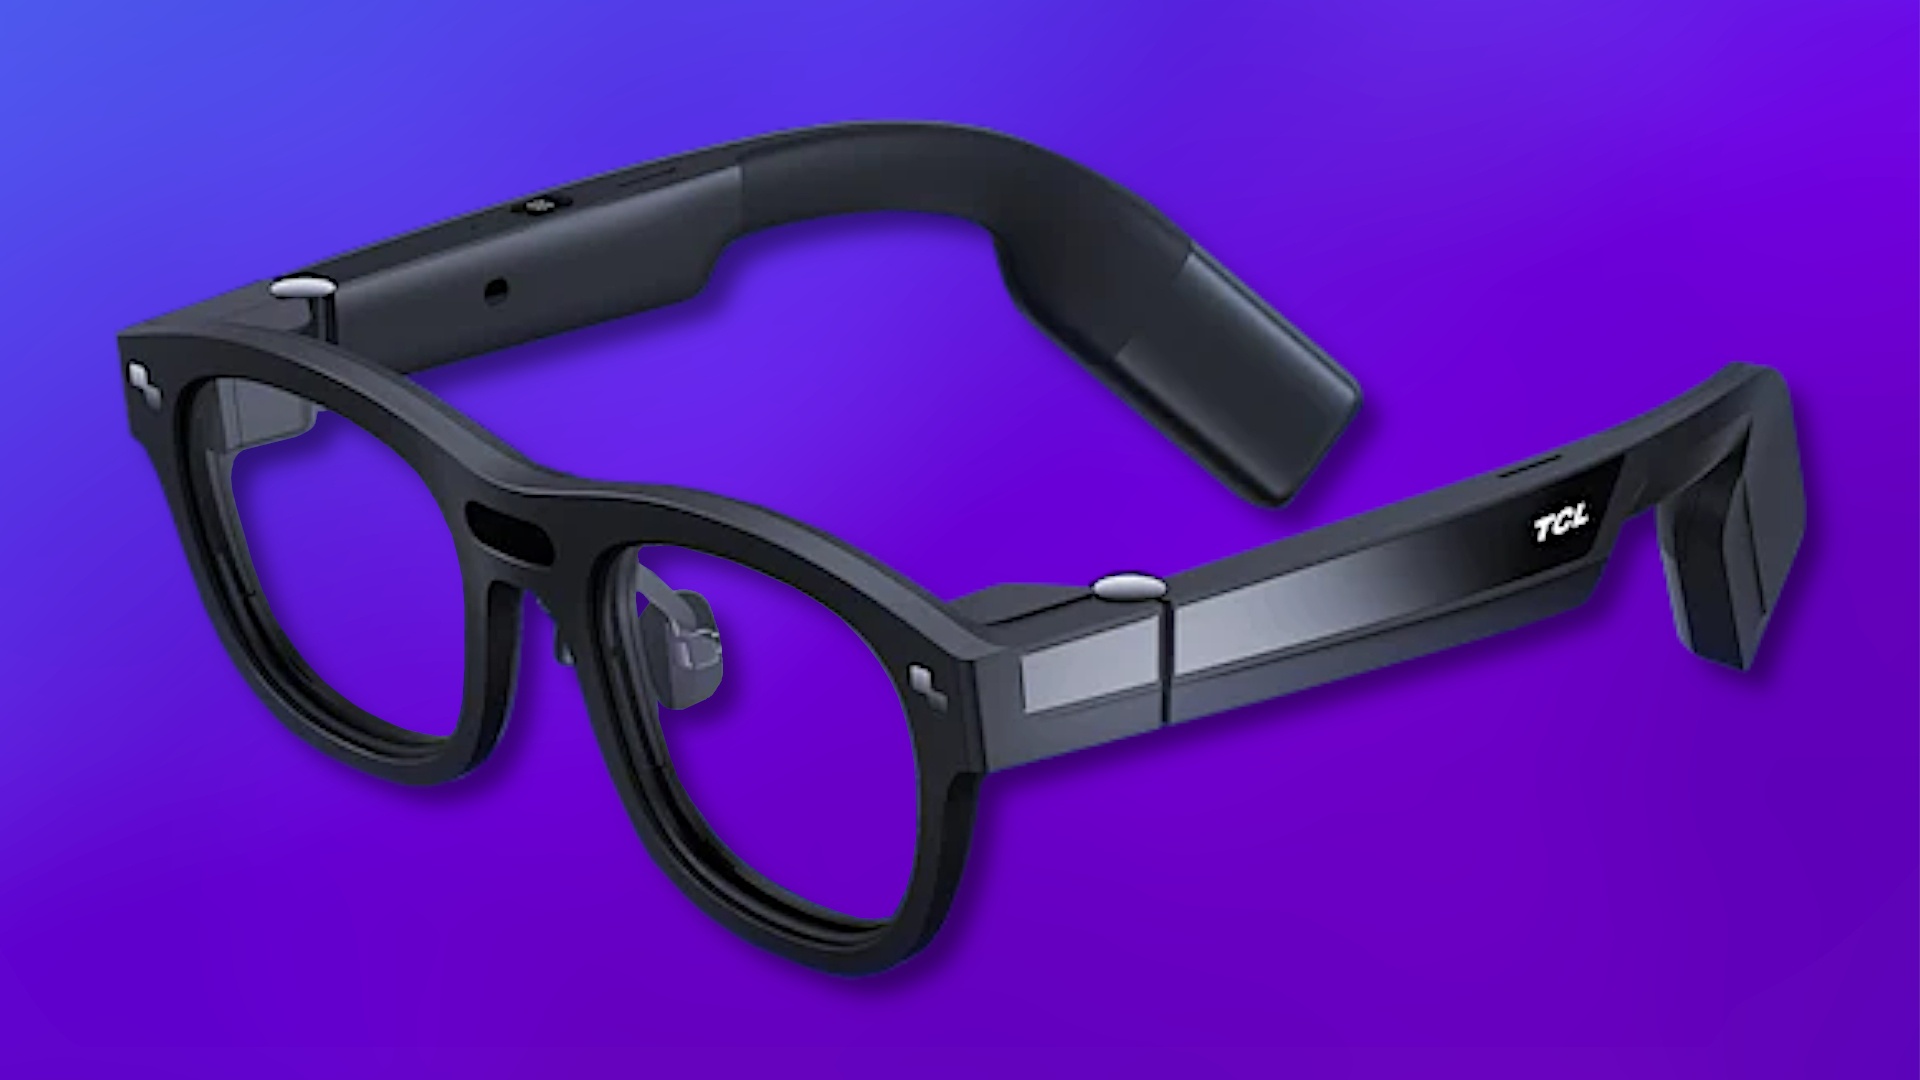 #Apps auf eurer Brille: Dieses Sci-Fi-Gadget soll schon bald euer Handy ablösen